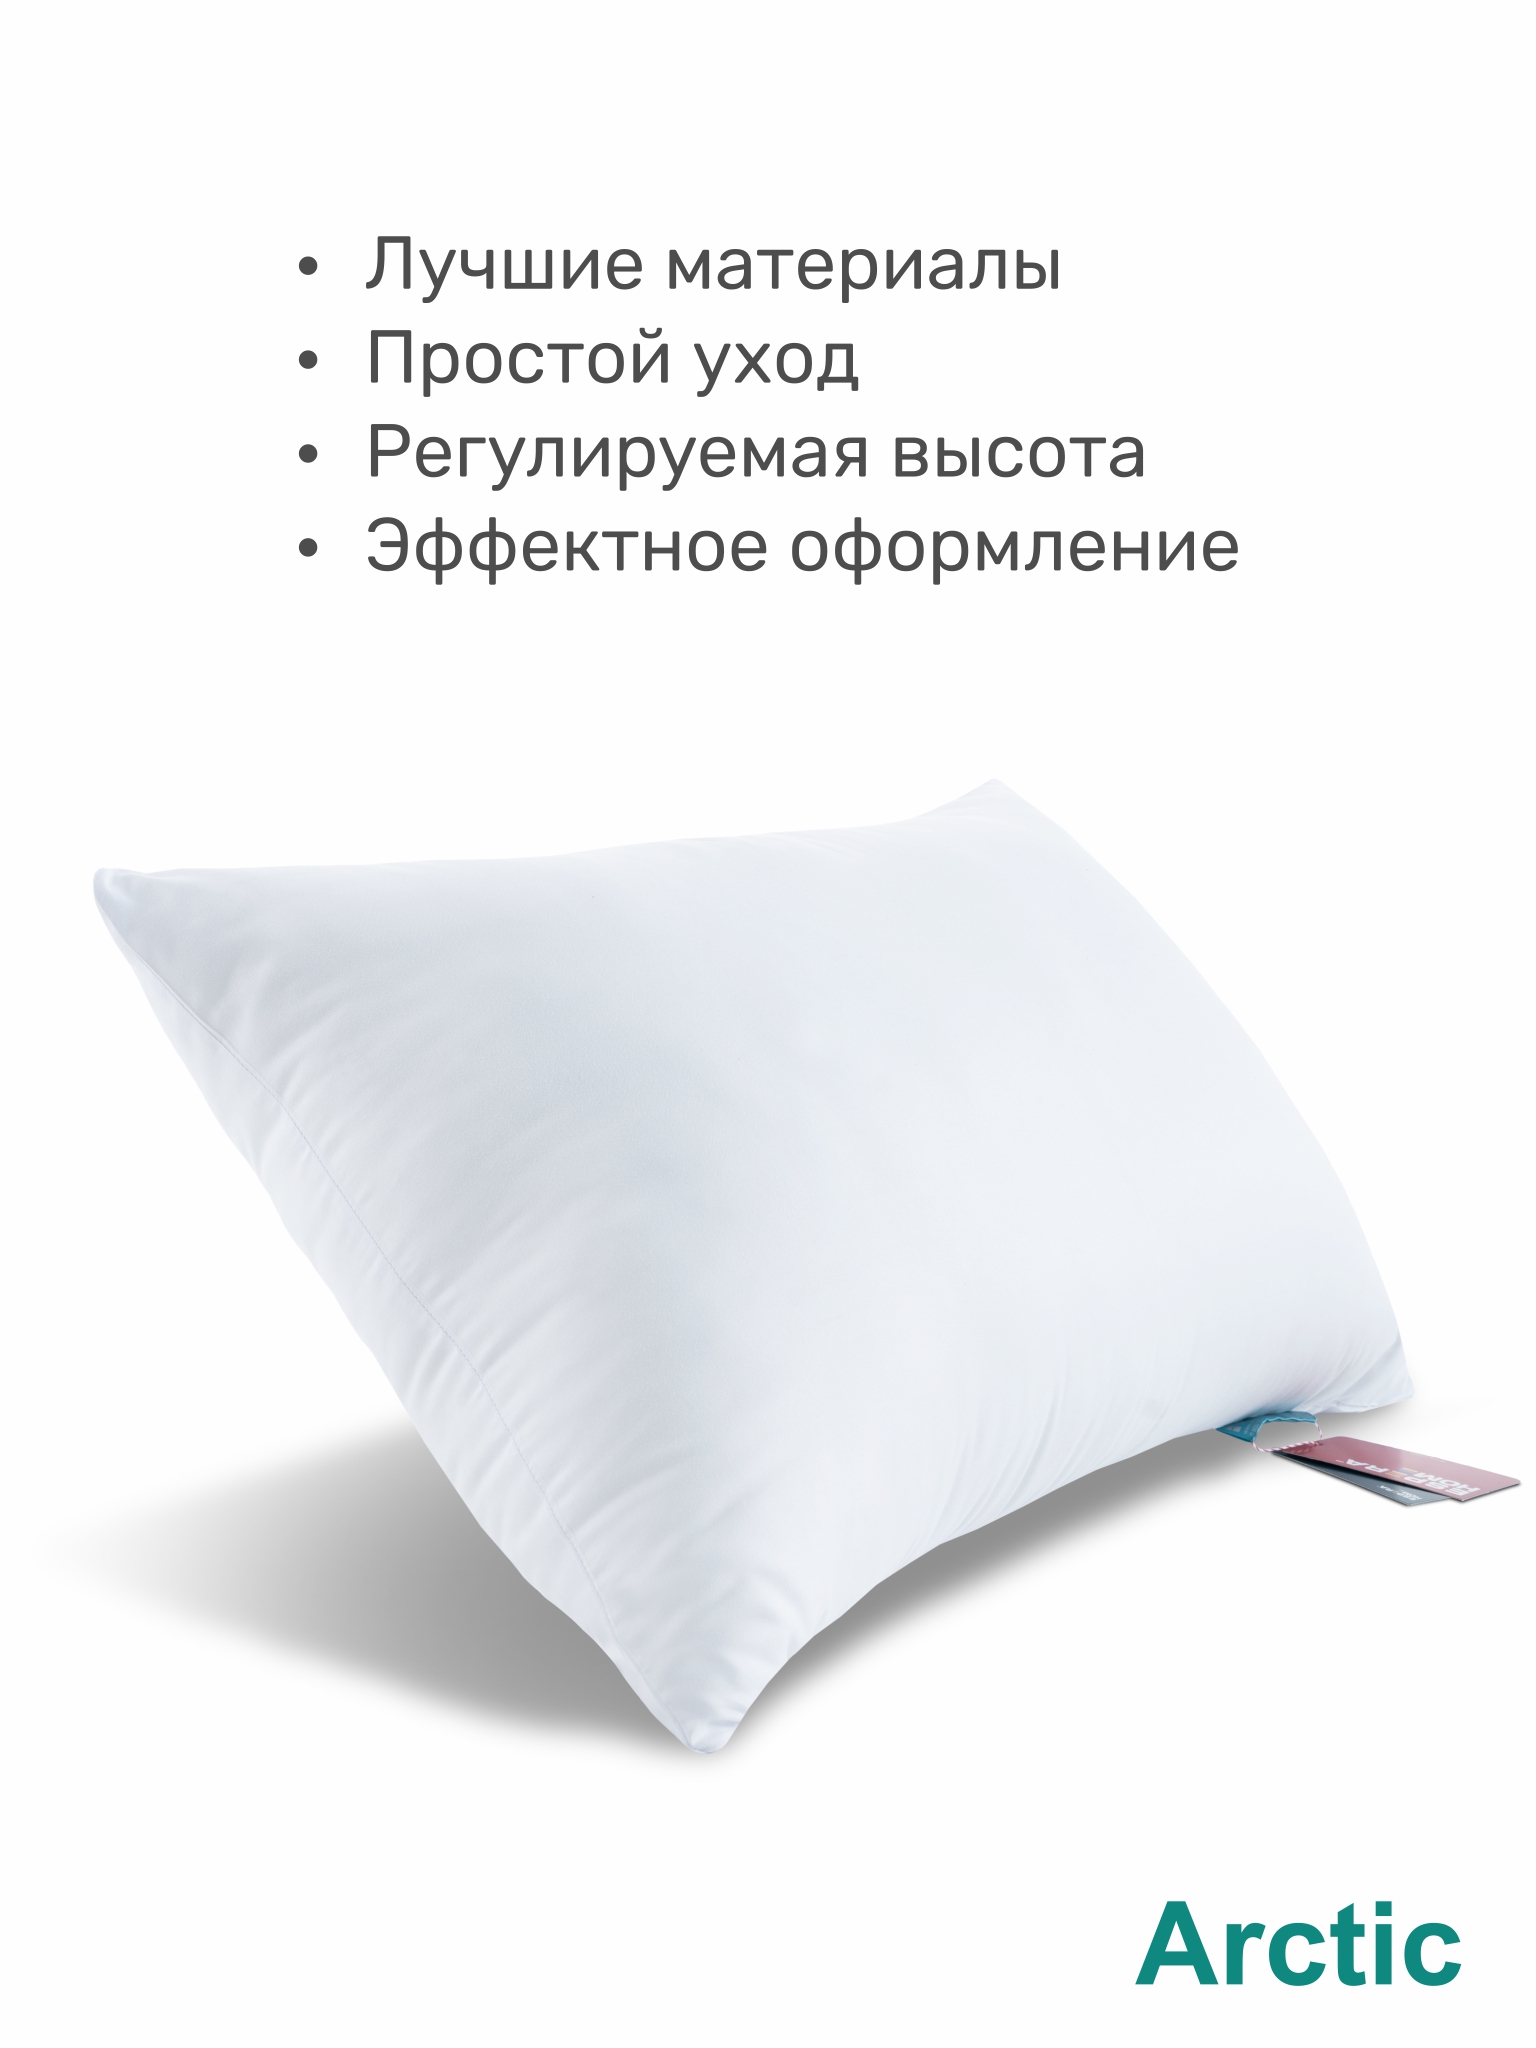 Выбор подушки. Как выбрать подушку для сна наполнитель какой лучше. Какой наполнитель лучше для подушки для сна взрослым. Подушка для тела Comfort u натуральный латекс espera (цилиндры). Какую выбрать подушку для сна взрослым